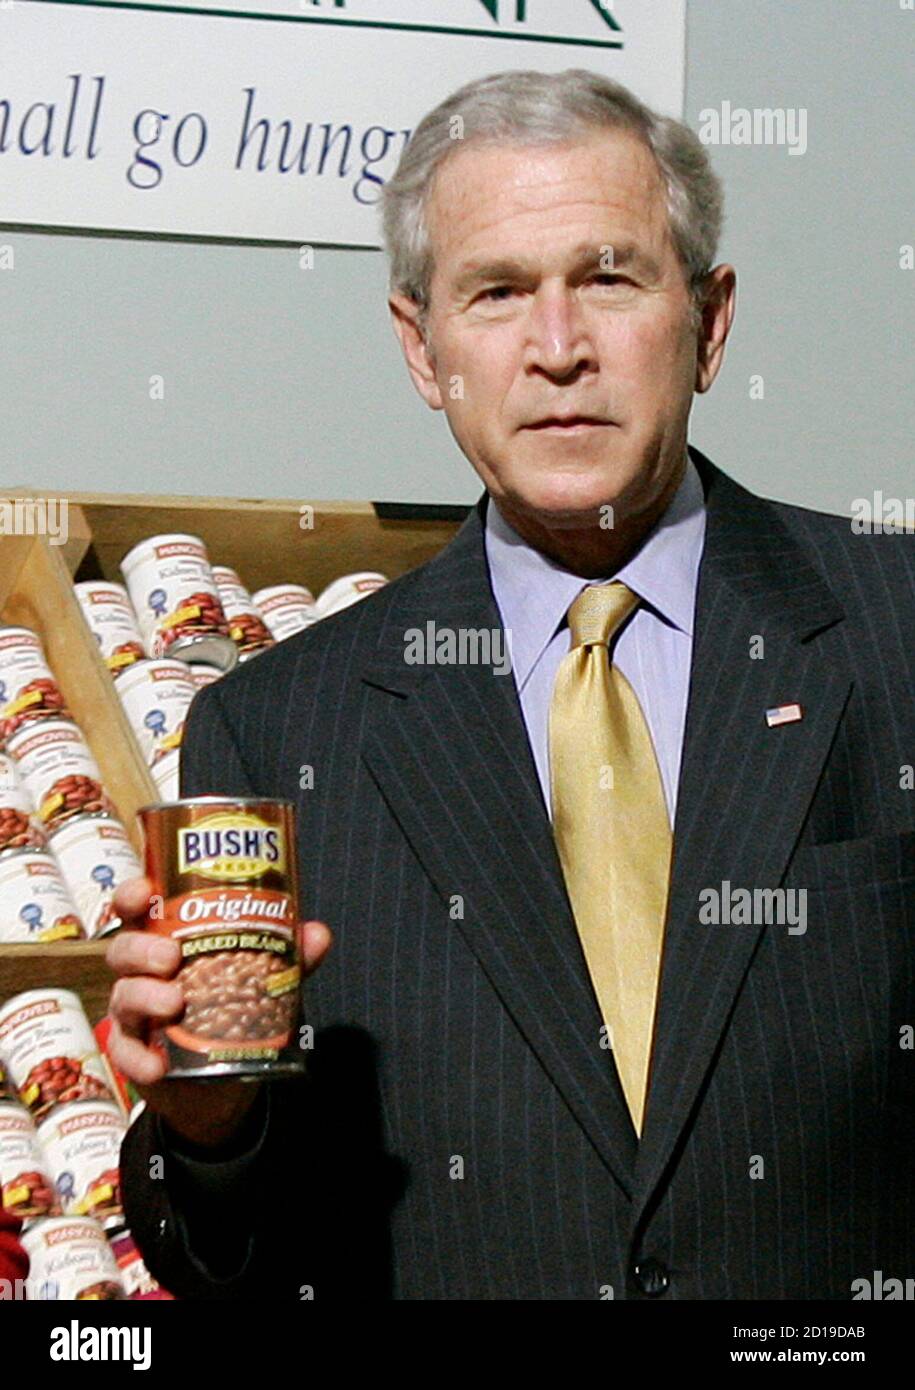 US-Präsident George W. Bush hält eine Dose von Bushs besten gebackenen Bohnen während seines Besuchs in der Central Virginia Foodbank in Richmond, Virginia, 19. November 2007. Bush reiste nach Virginia für Veranstaltungen vor dem Thanksgiving Feiertag. REUTERS/Jason Reed (USA) Stockfoto